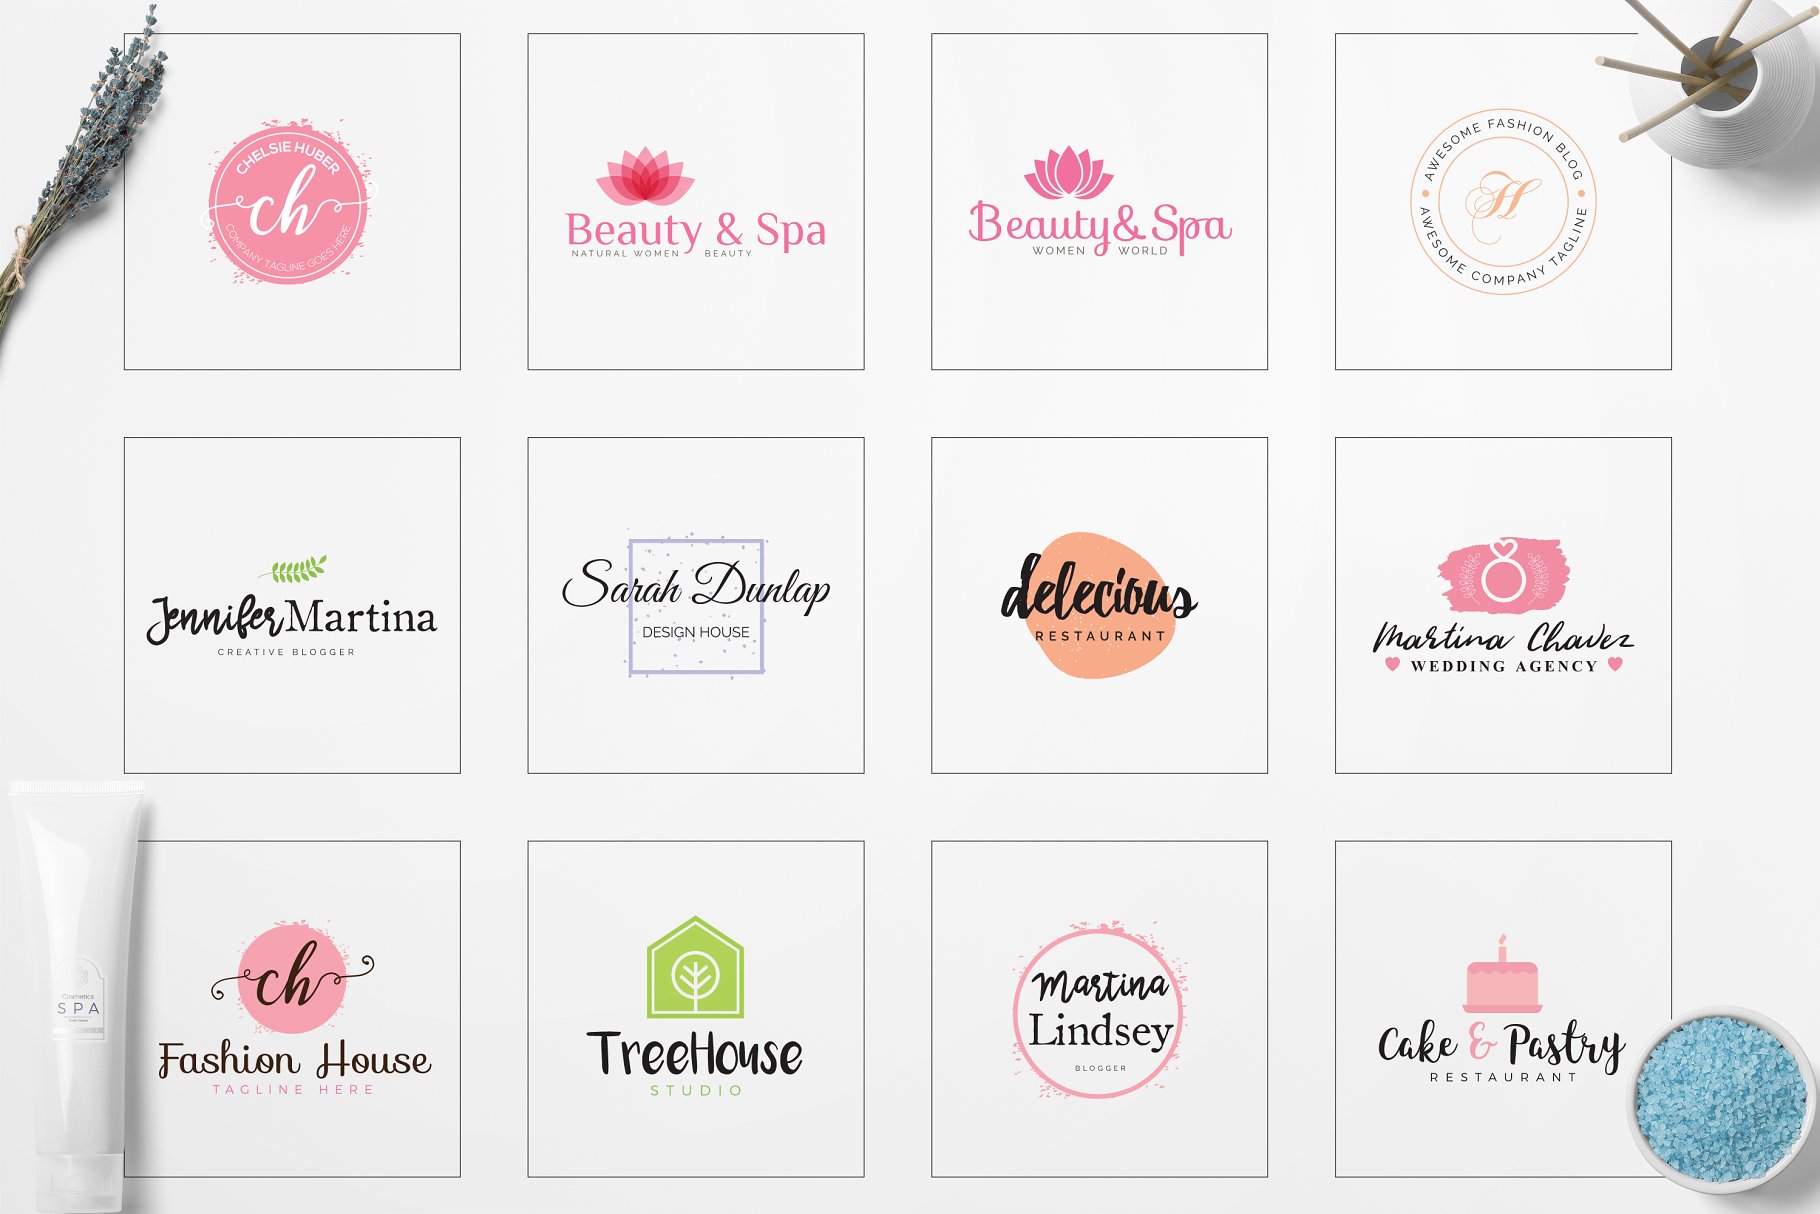 女性简约品牌Logo标志设计素材包 Feminine Minimal Branding Logo Pack插图3